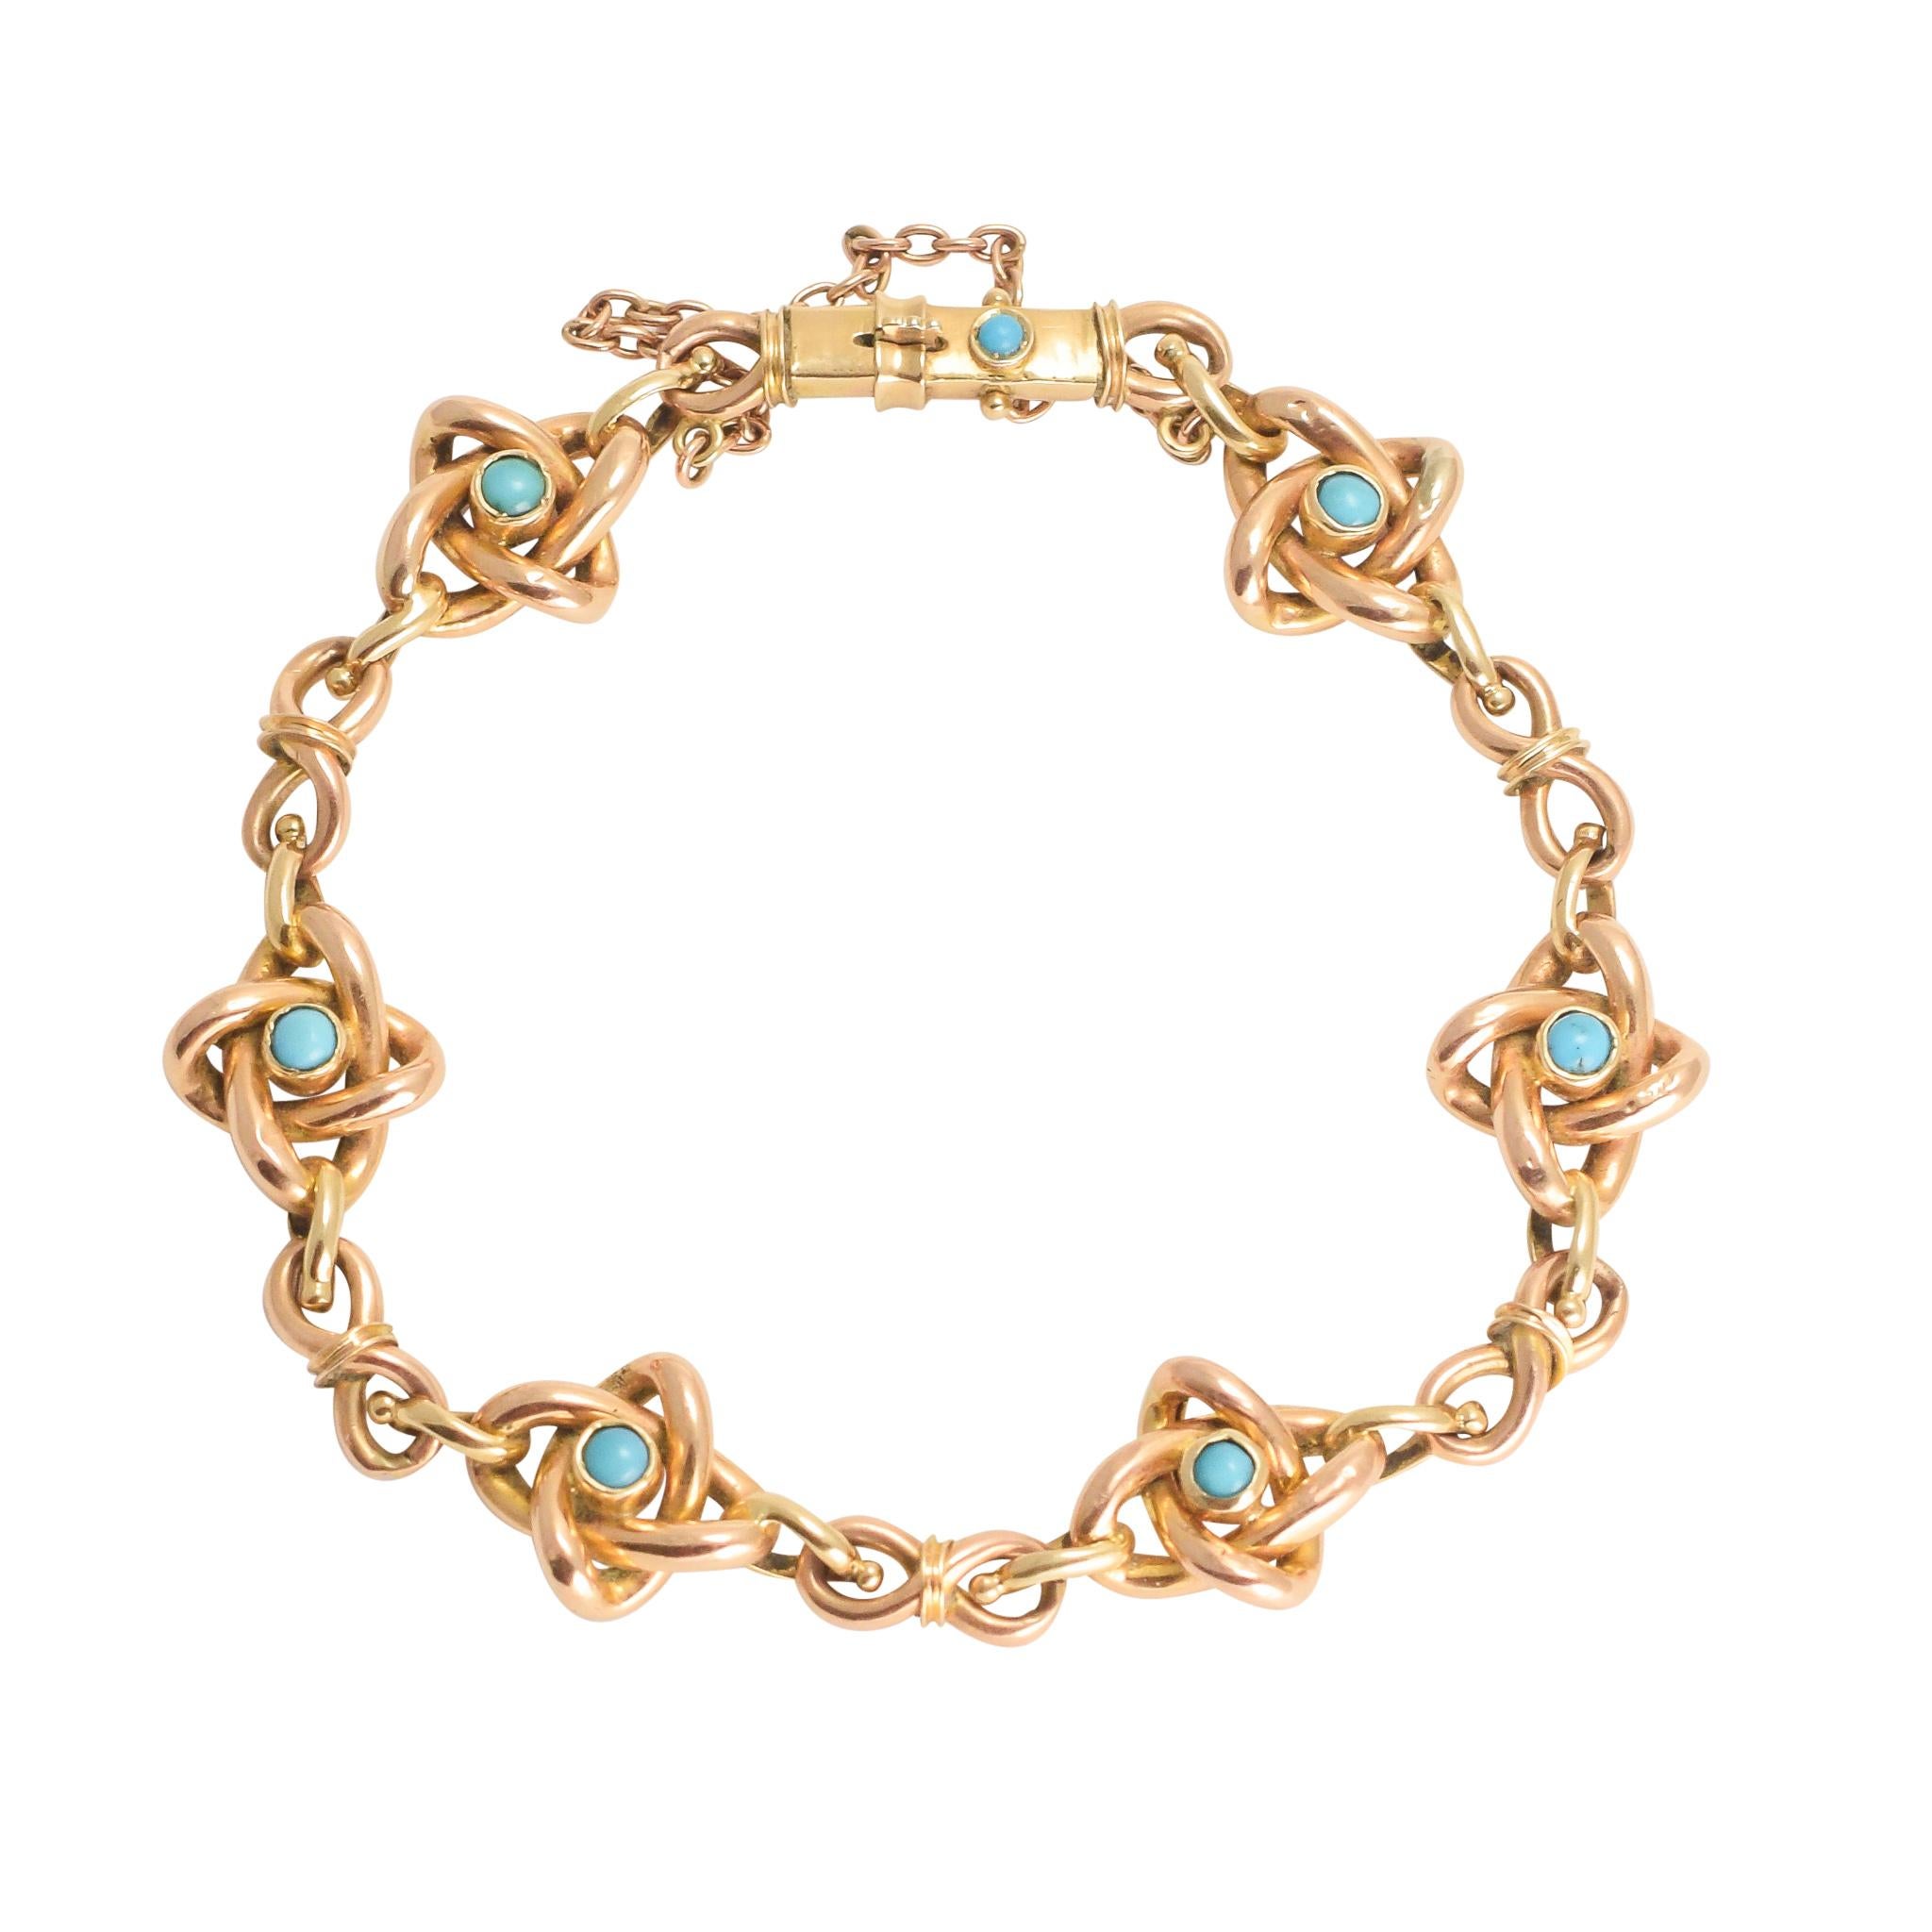 Antique Art Nouveau Turquoise Infinity Bracelet